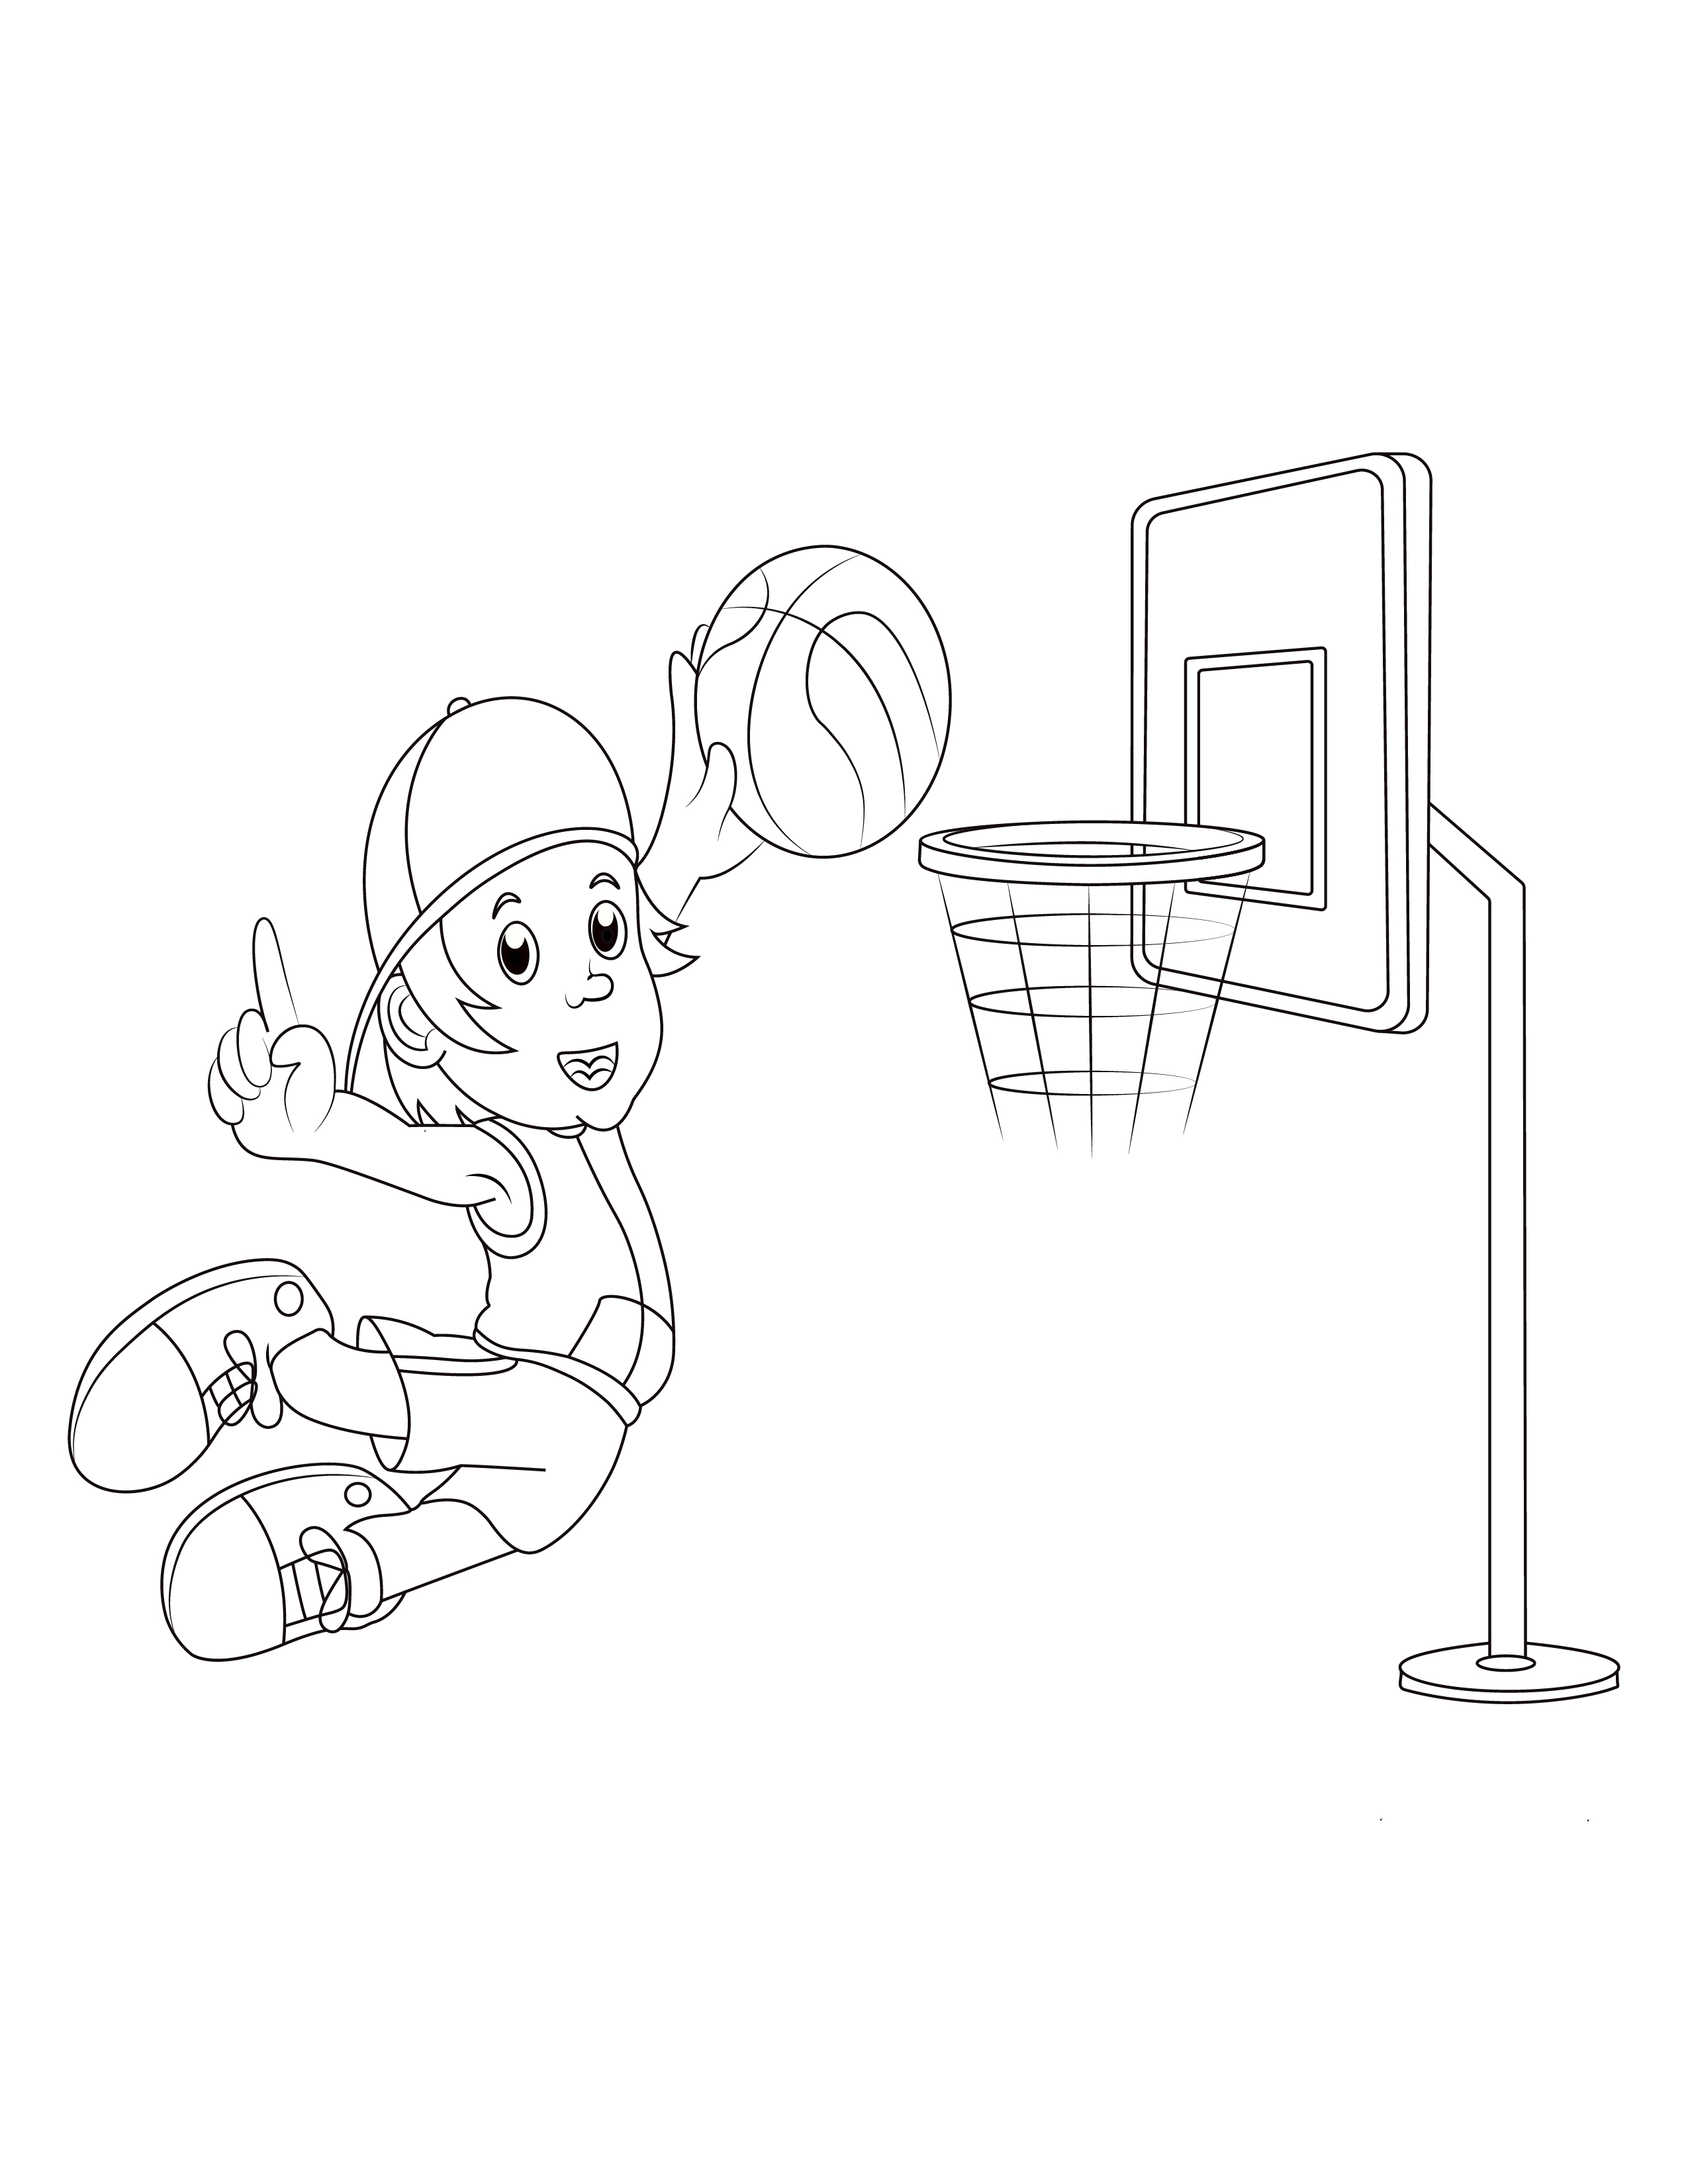 Målarbok av barn som spelar basket